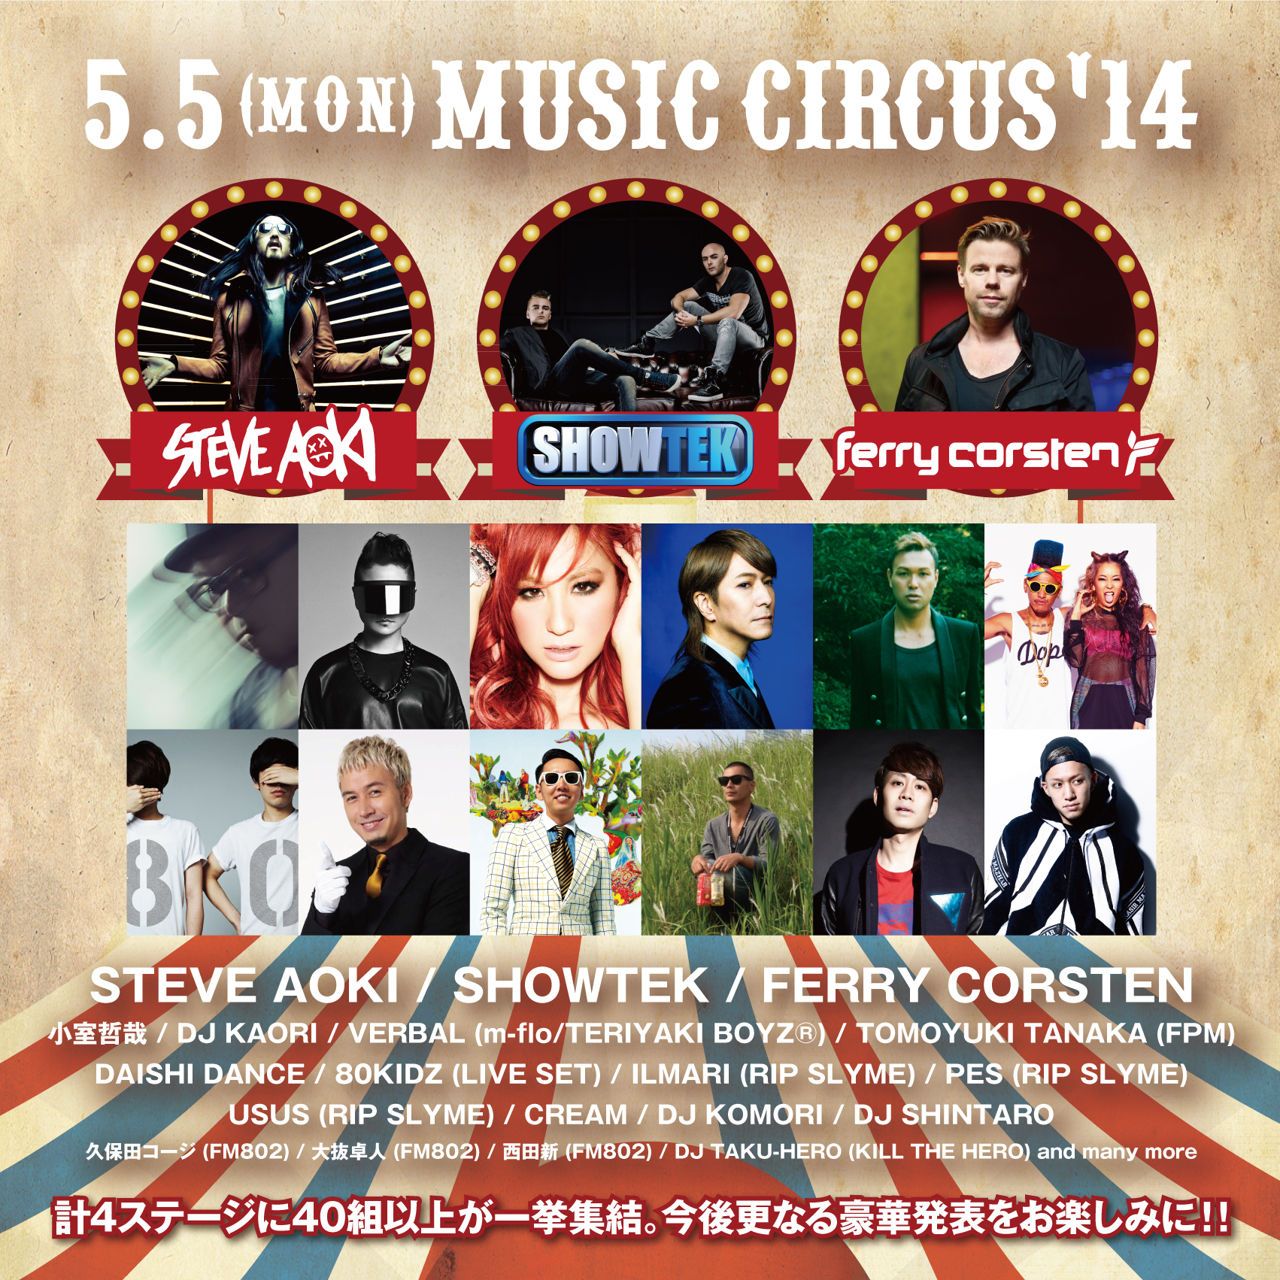 関西最大フェス「MUSIC CIRCUS'14」が早くも第3弾アーティストを発表。SHOWTEK、FERRY CORSTENが出演決定